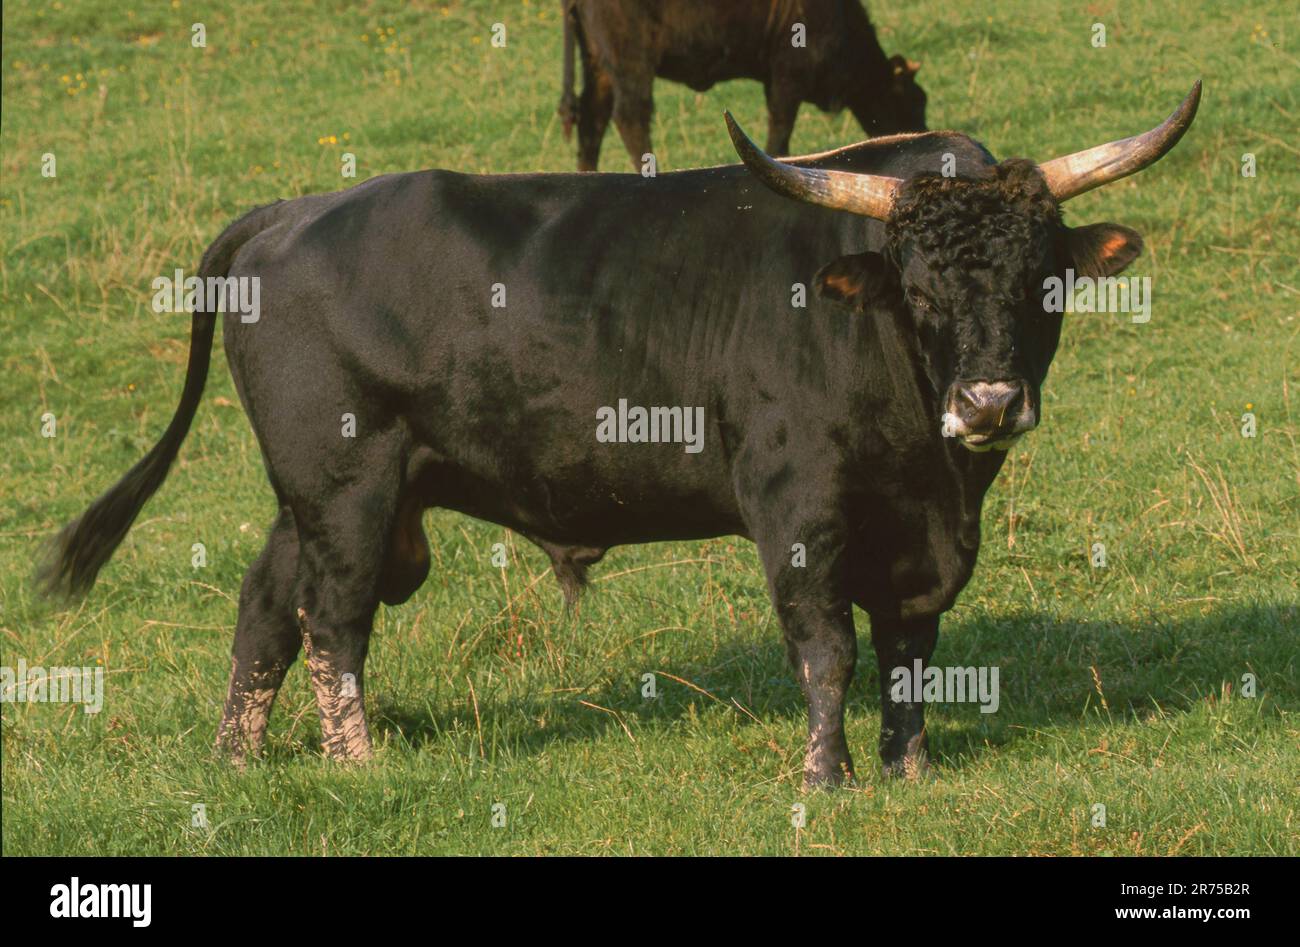 Bovini da collo (Bos primigenius F. taurus), toro grosso su pascoli, Germania, Baviera, Ammerseeinsel Foto Stock